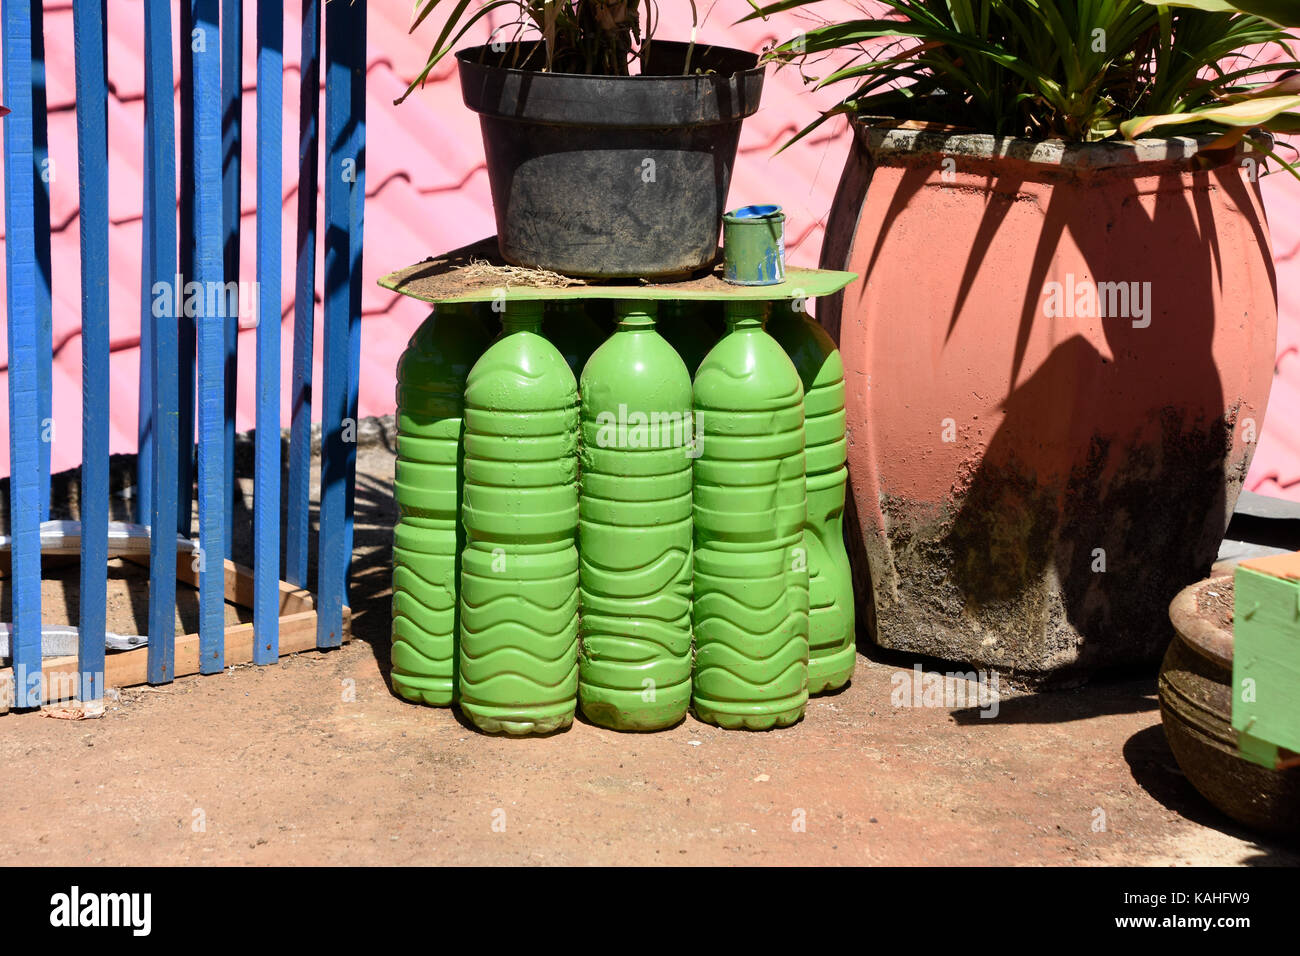 Les bouteilles en plastique utilisées comme des jardinières au rainbow village de Semerang, Indonésie Banque D'Images